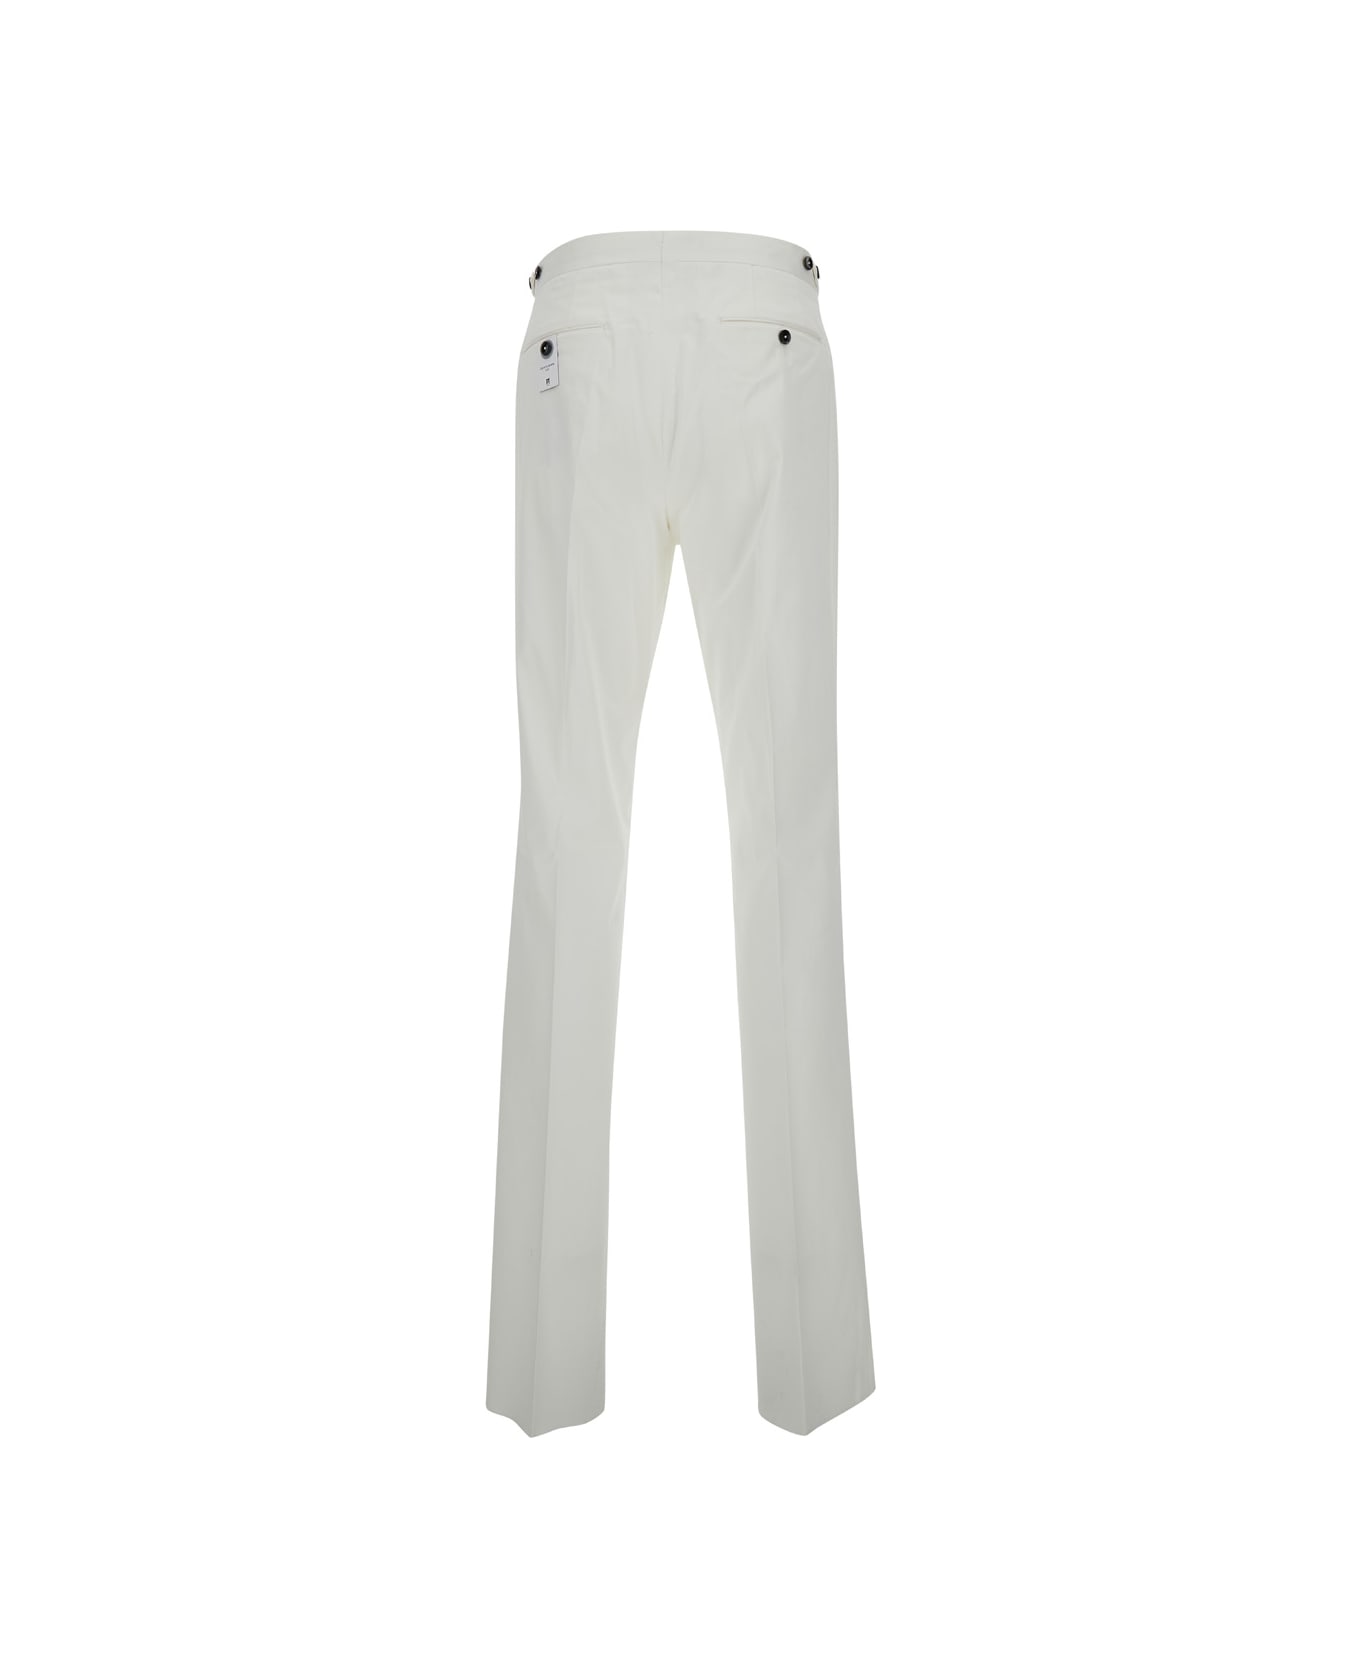 PT Torino White Slim Fit Tailoring Pants In Cotton Blend Man - White